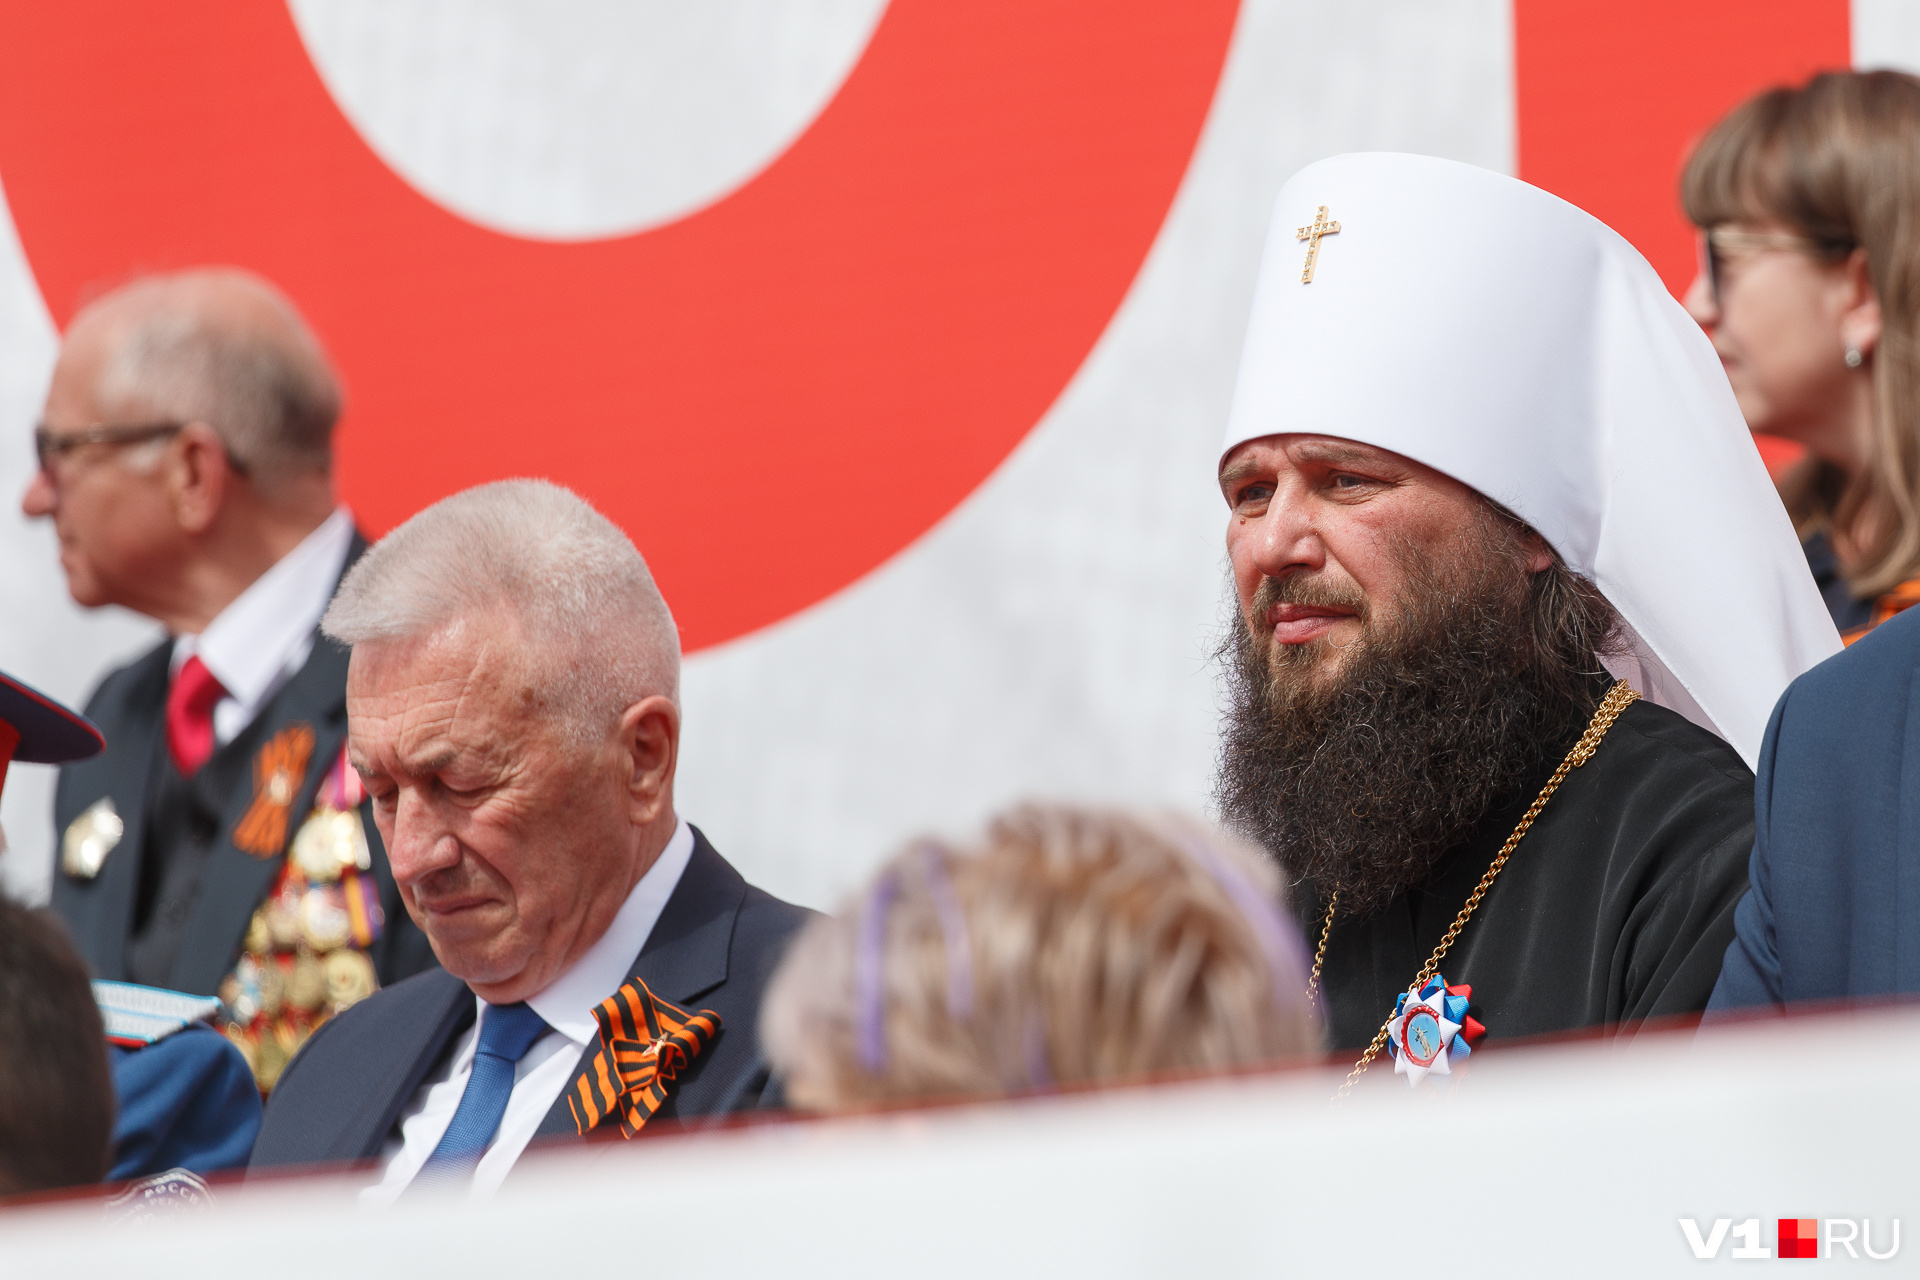 Главному православному священнику региона отцу Феодору повезло сесть рядом с главным ветераном региона Александром Блошкиным